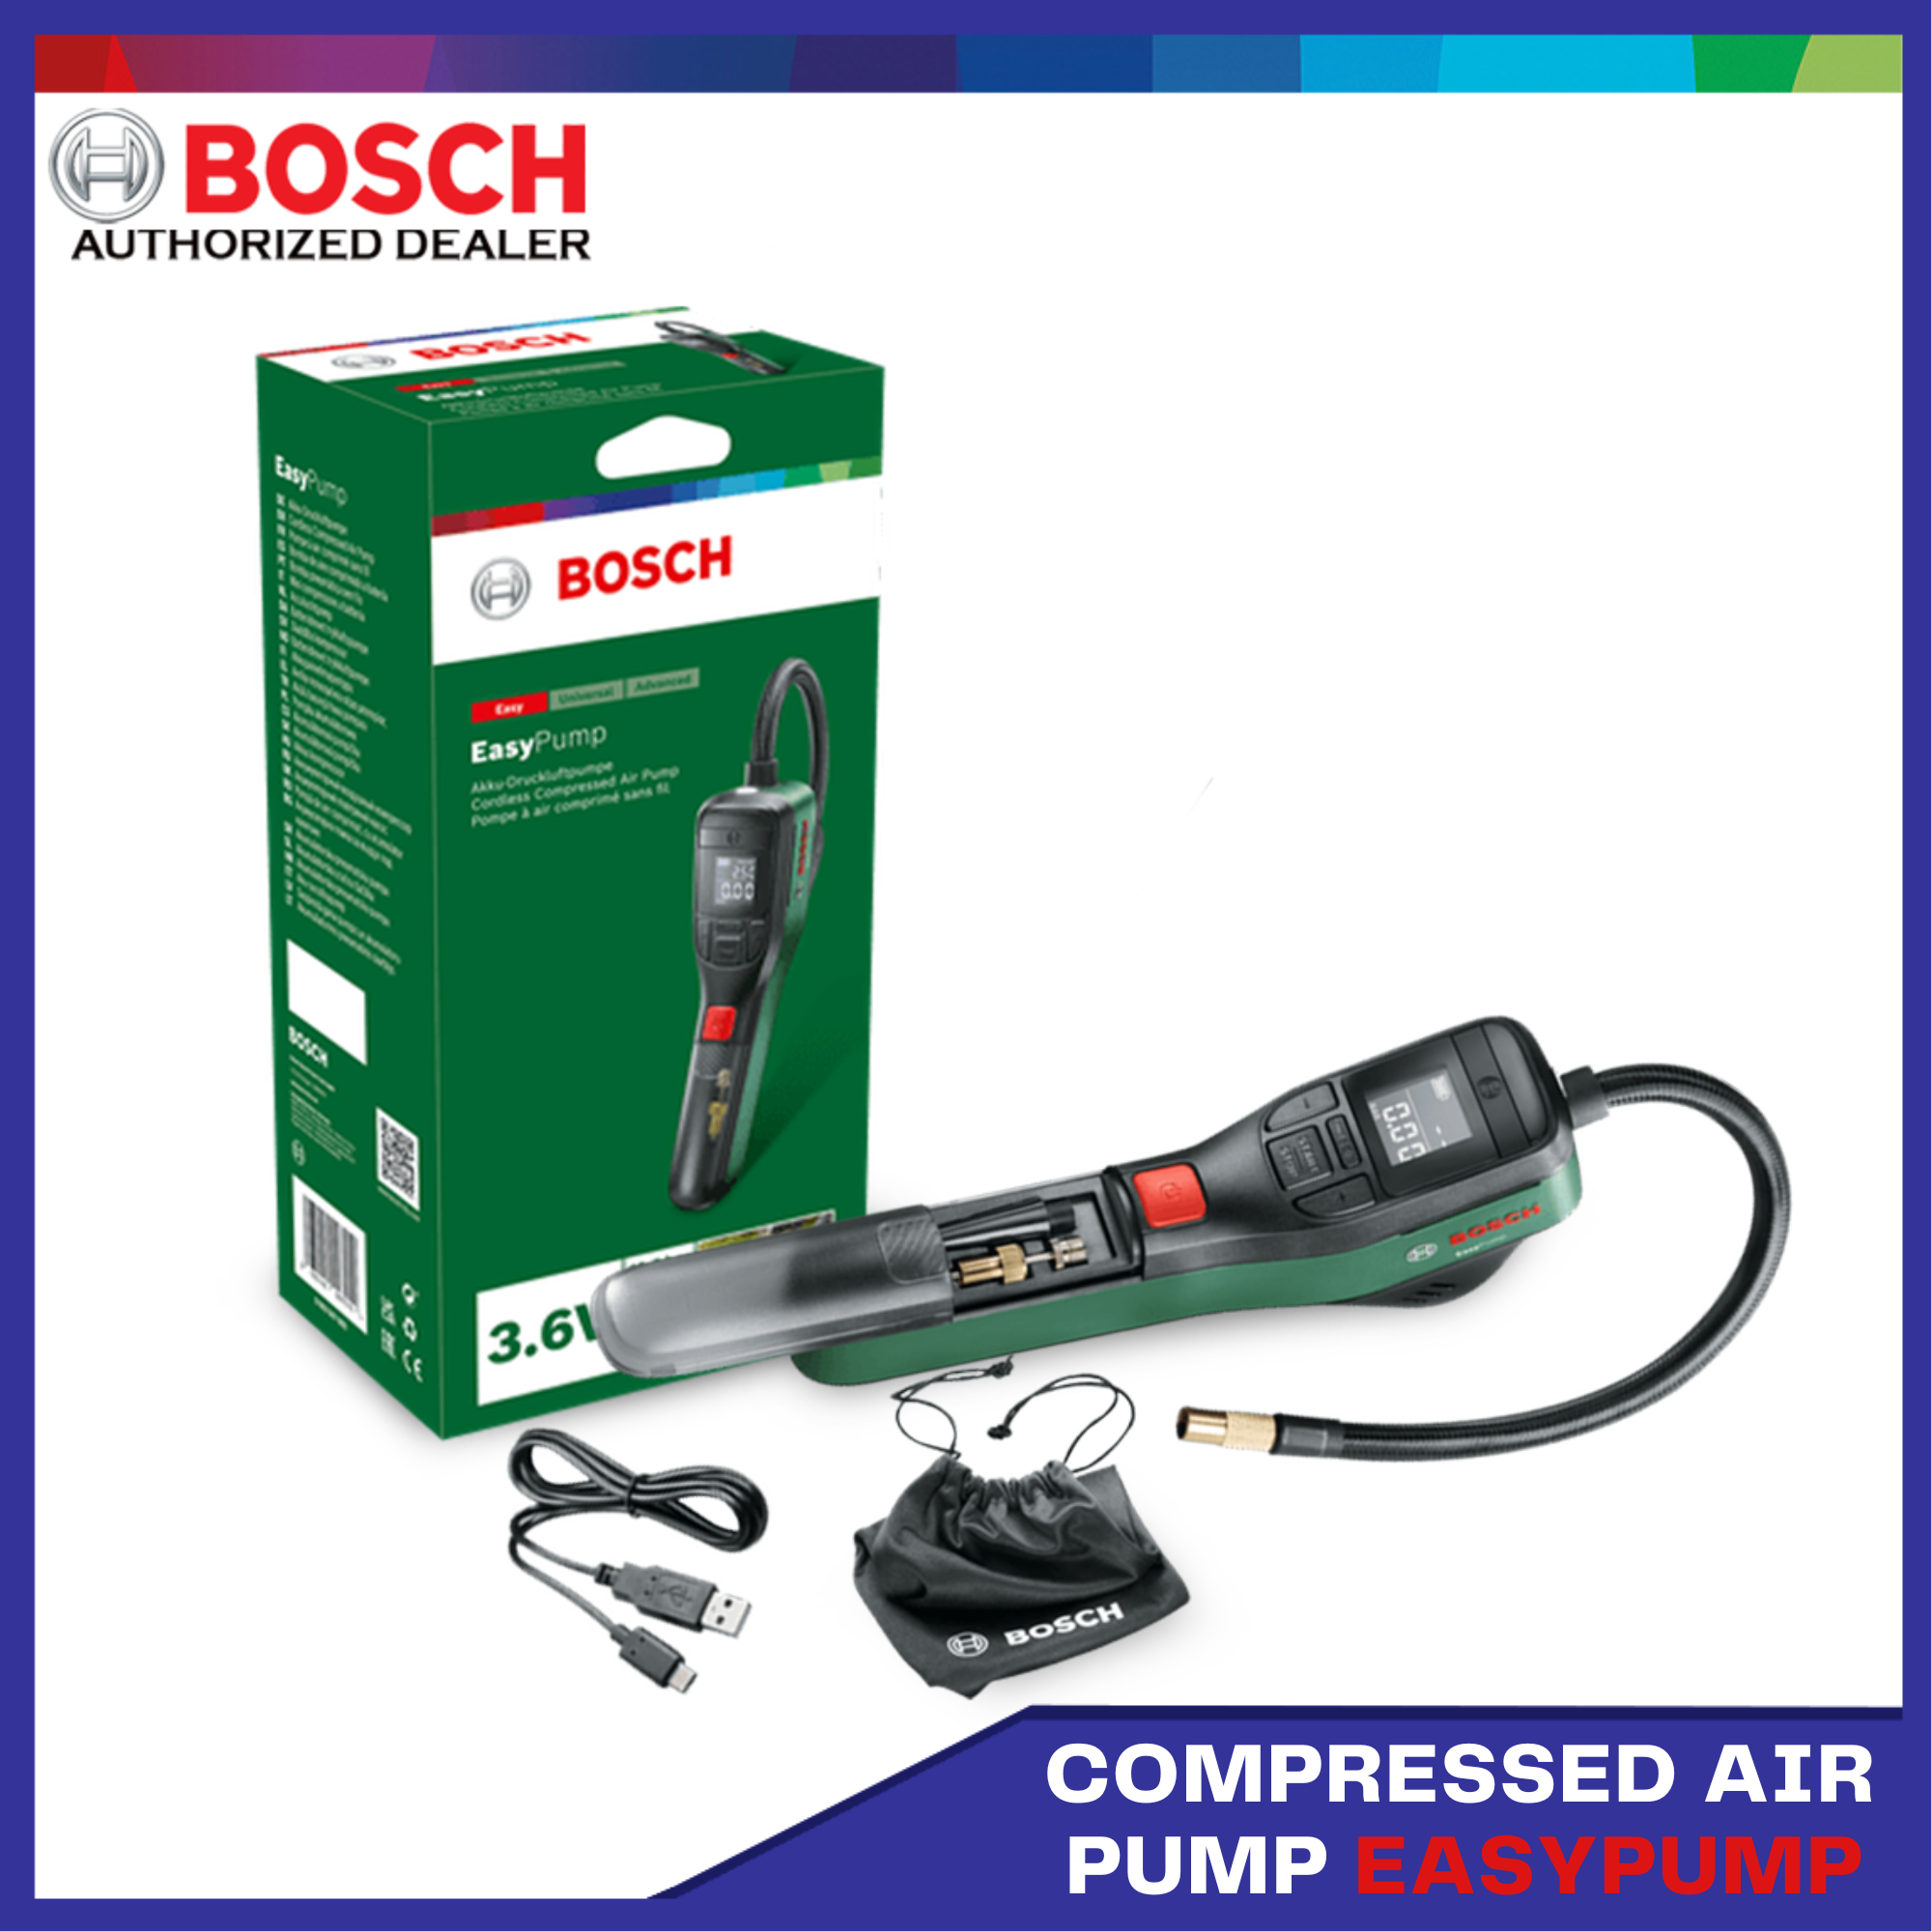 Bosch Cordless Compressed Air Pump 3.6V 3.0Ah 150 PSI Tire Air